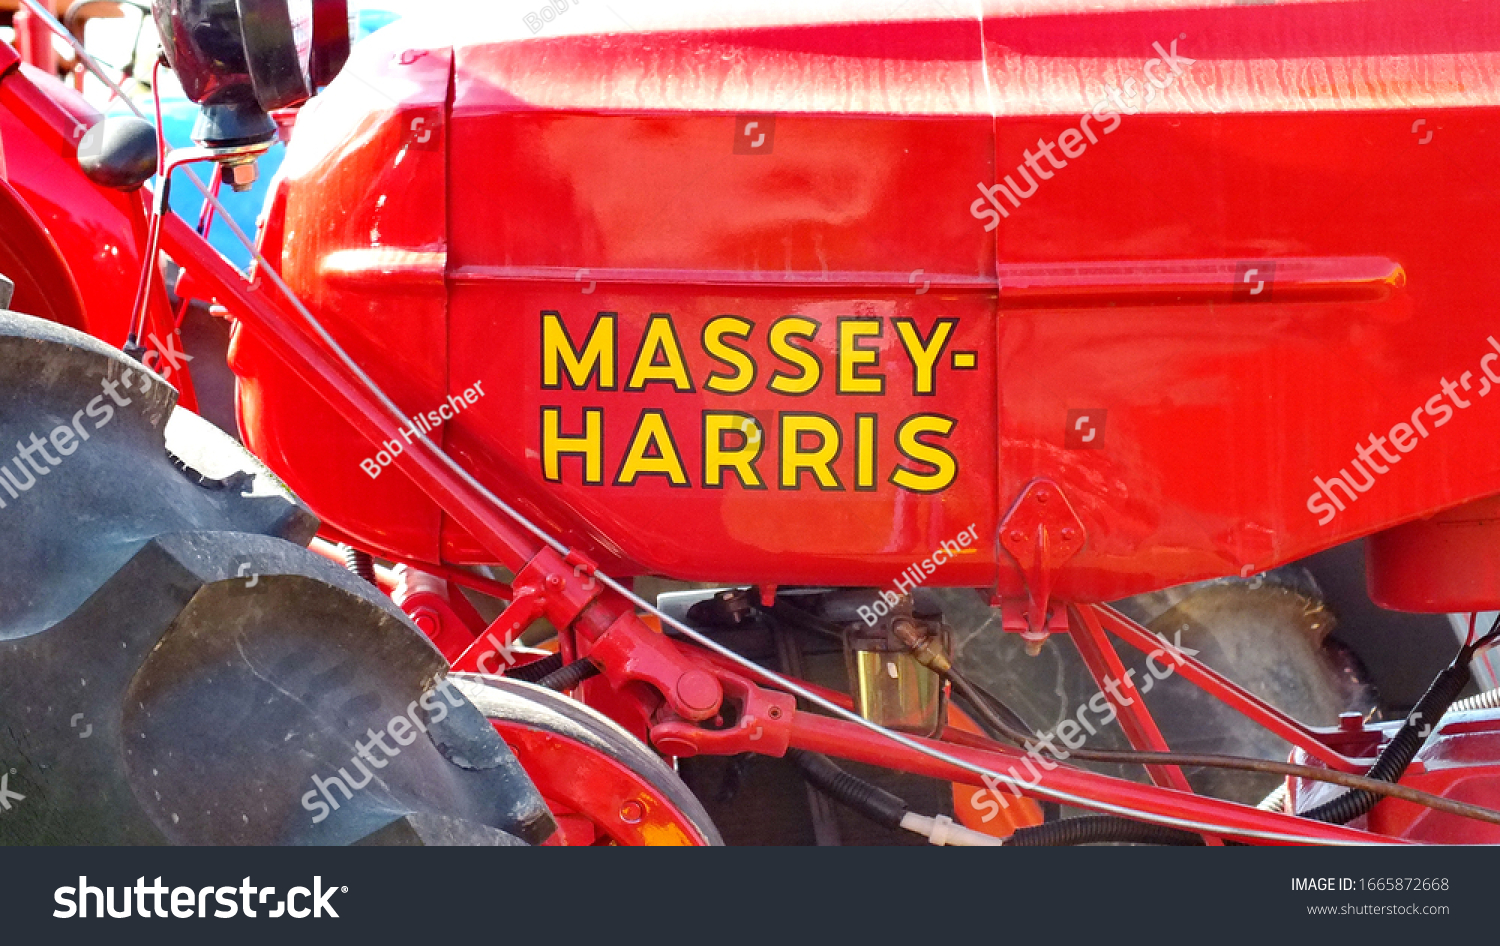 92 Massey Harris Tractor Görseli Stok Fotoğraflar Ve Vektörler